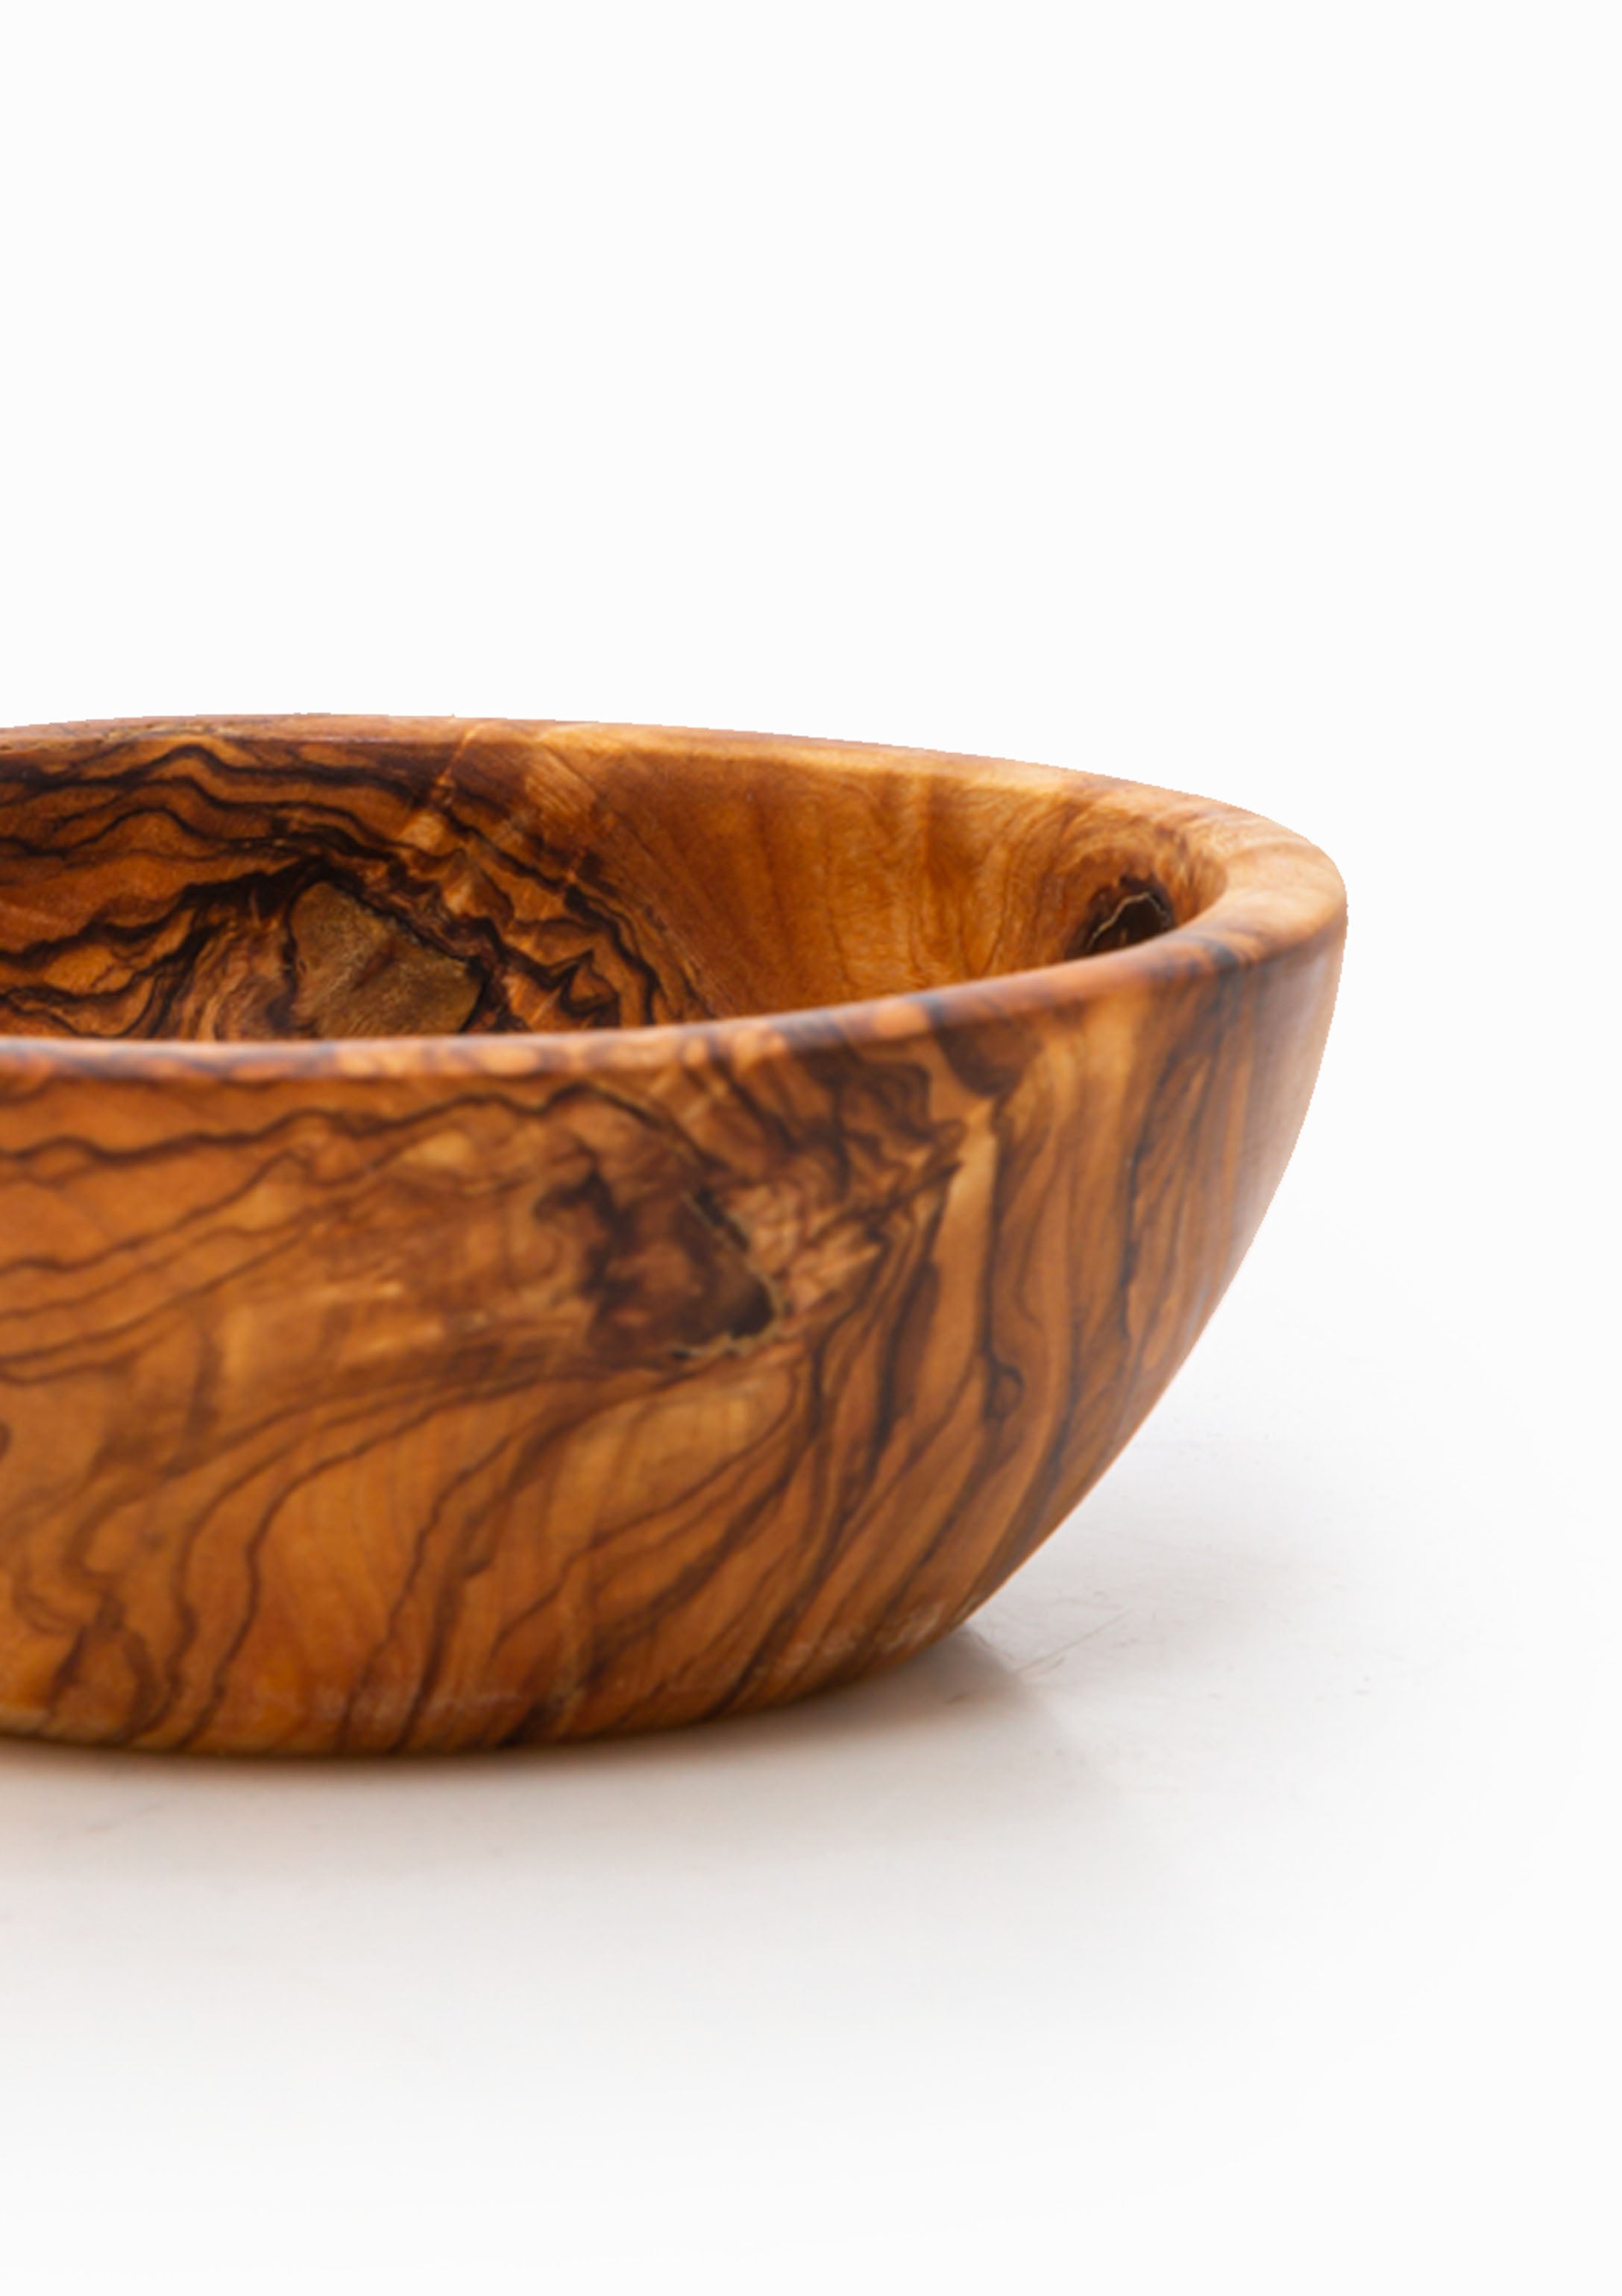 Olive Wood Bowl | Medium